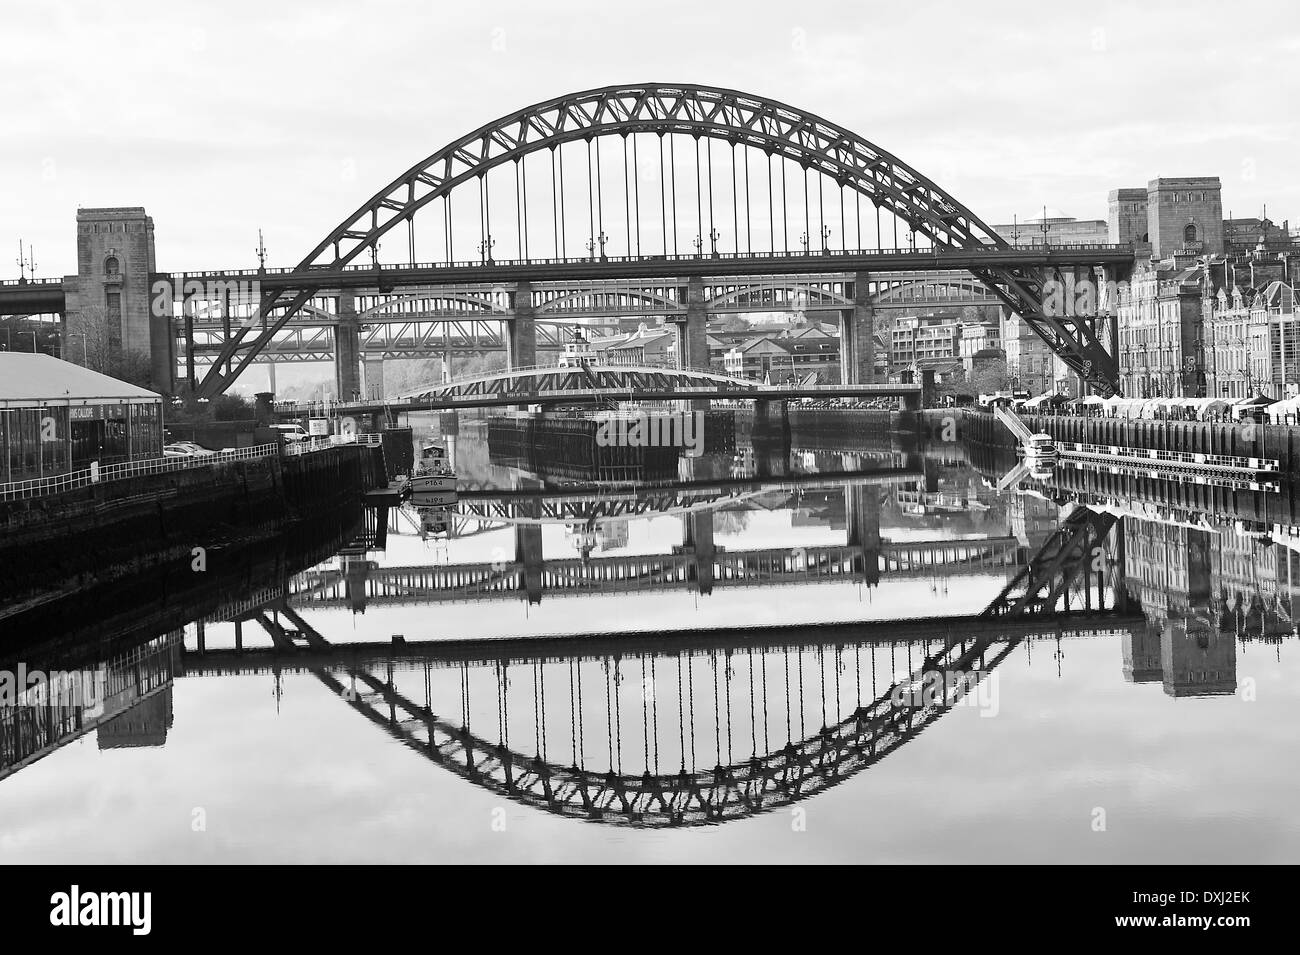 Image miroir Reflets de la Tyne et de ponts dans la région de Tyne à Newcastle Quayside Angleterre Royaume-Uni UK Banque D'Images